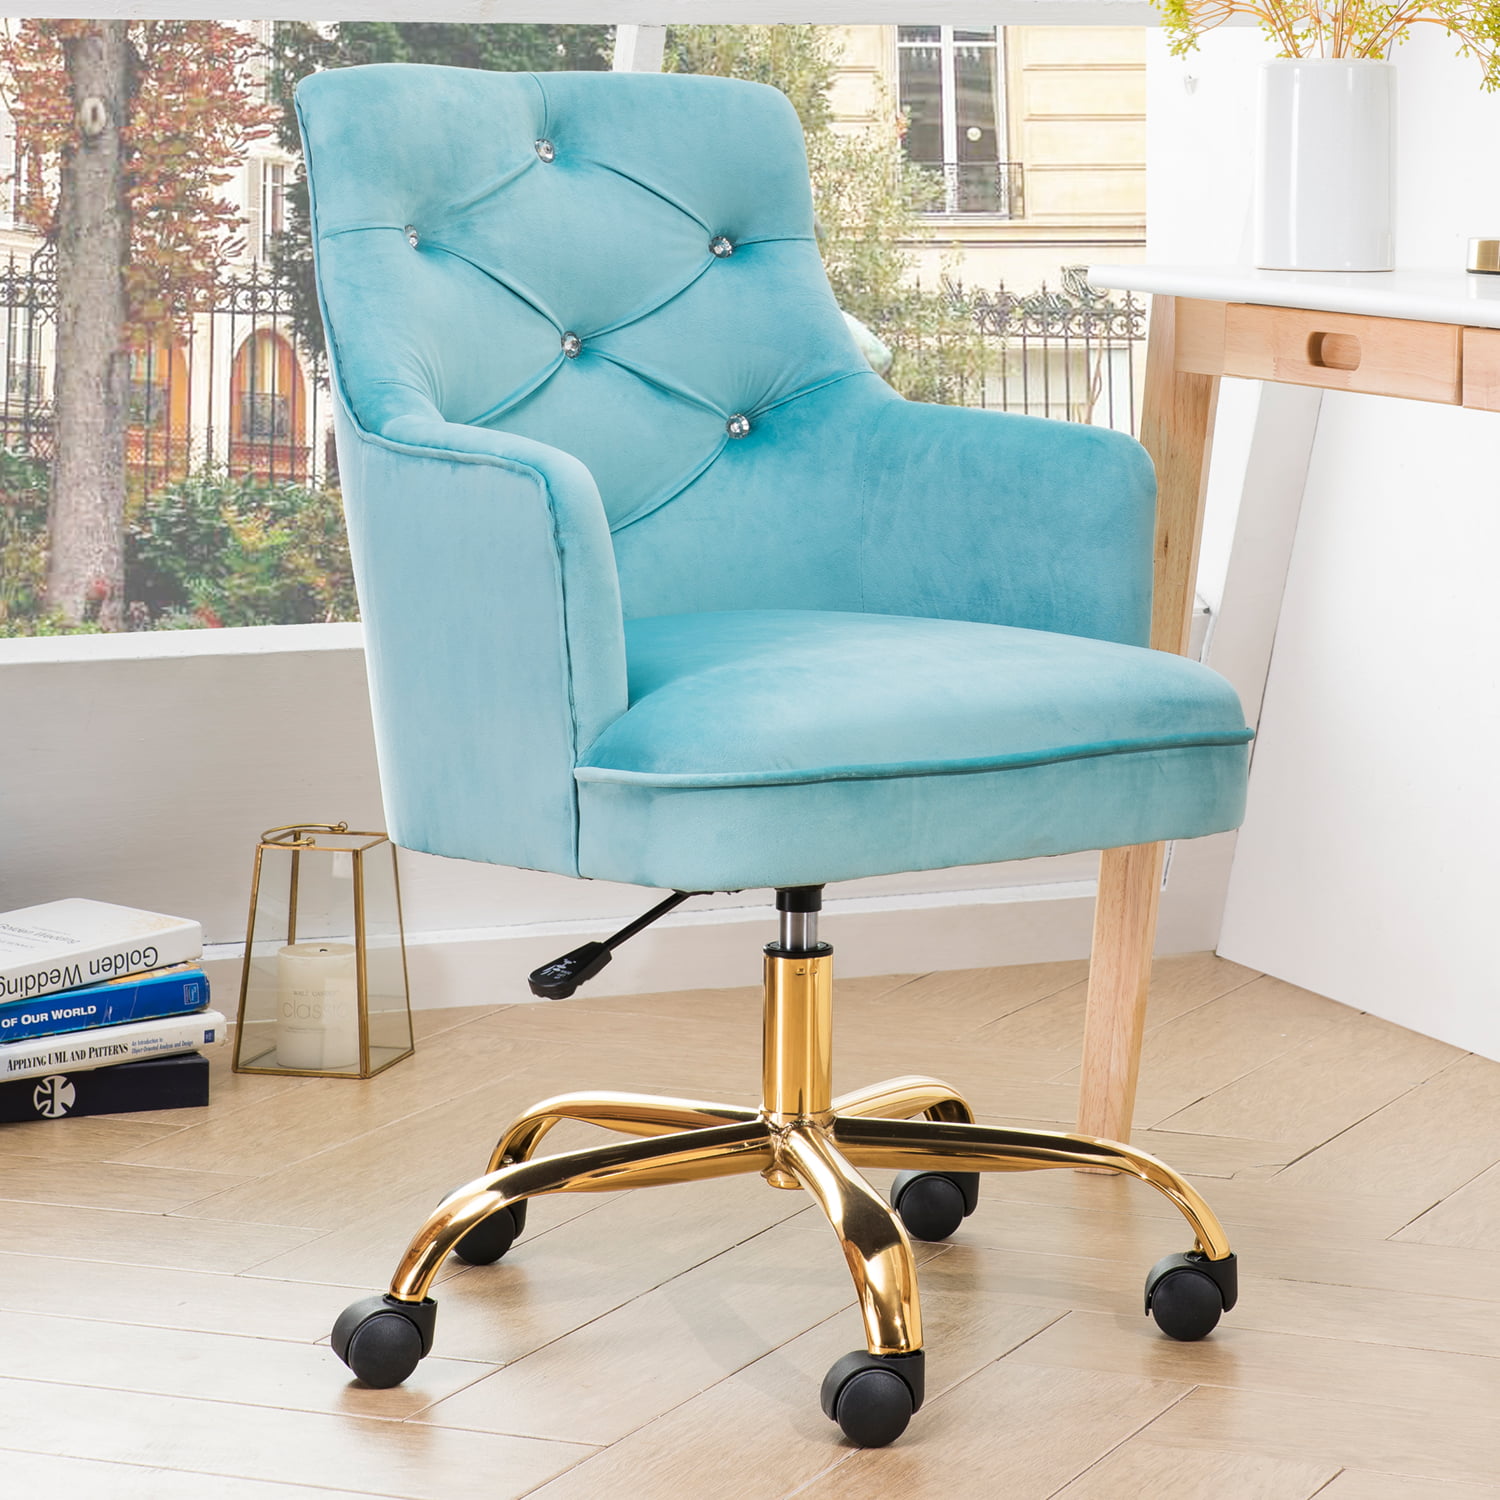 OVIOS Cute Desk Chair,Plush Velvet Office Chair for Girl or Lady,Modern